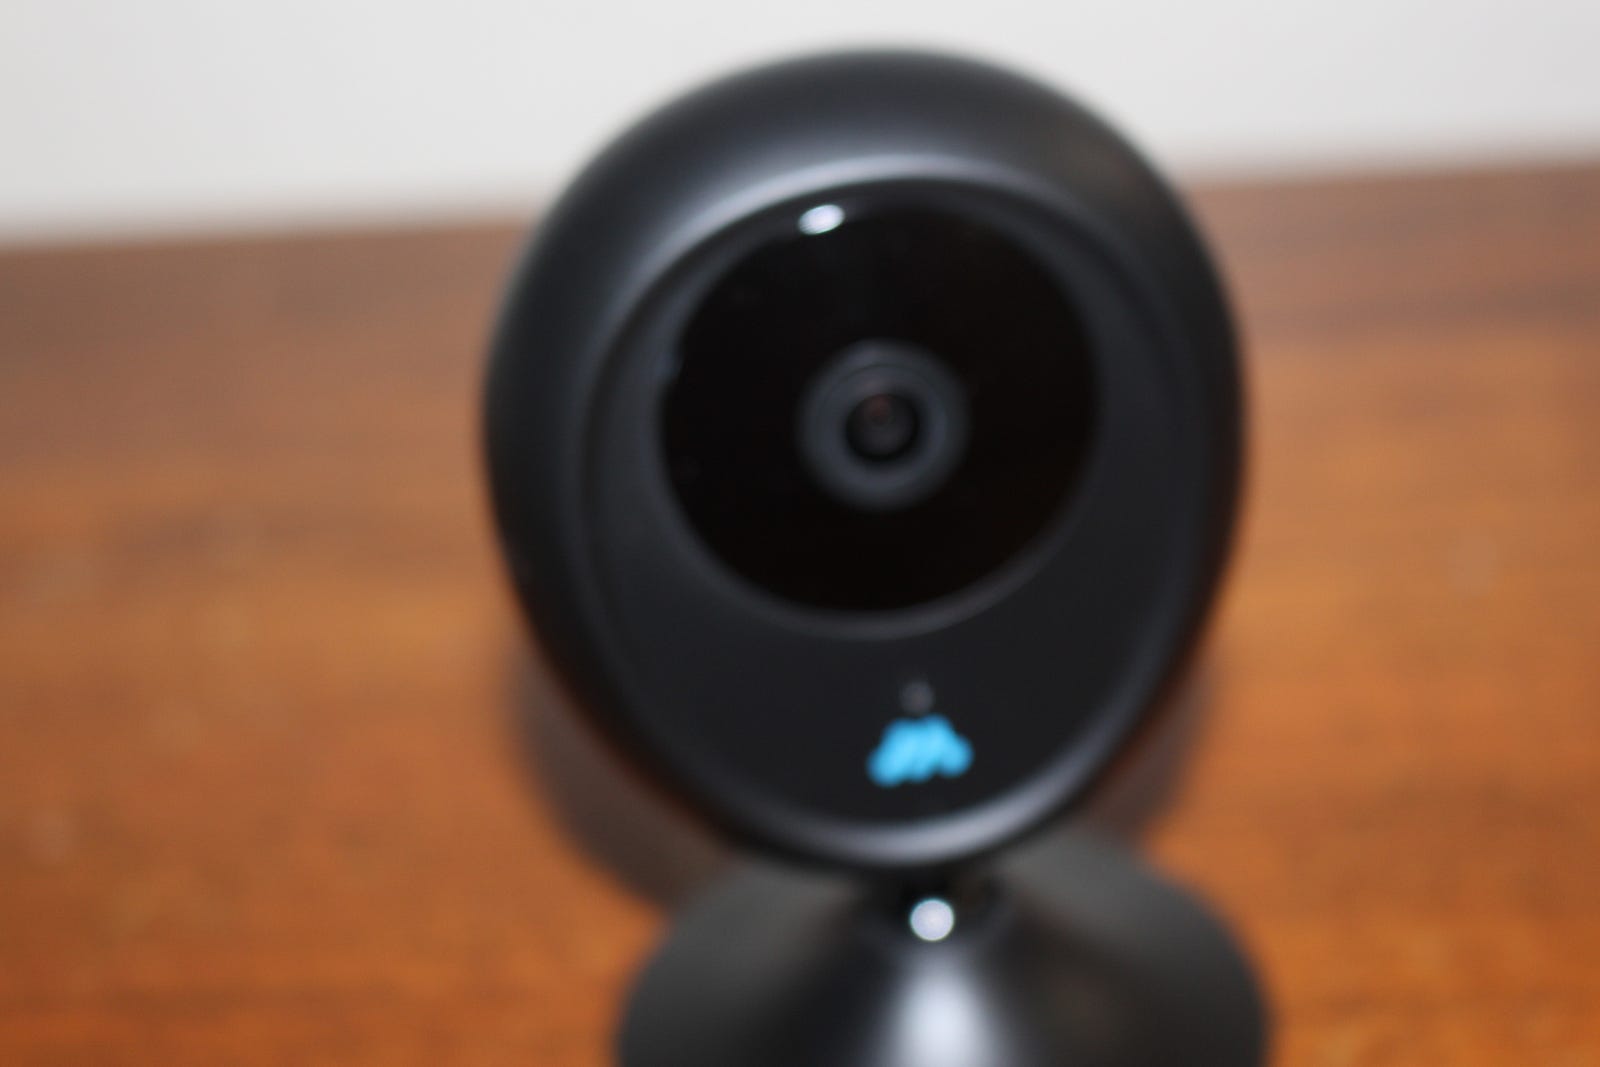 Cori Hd Smart Home Security Camera